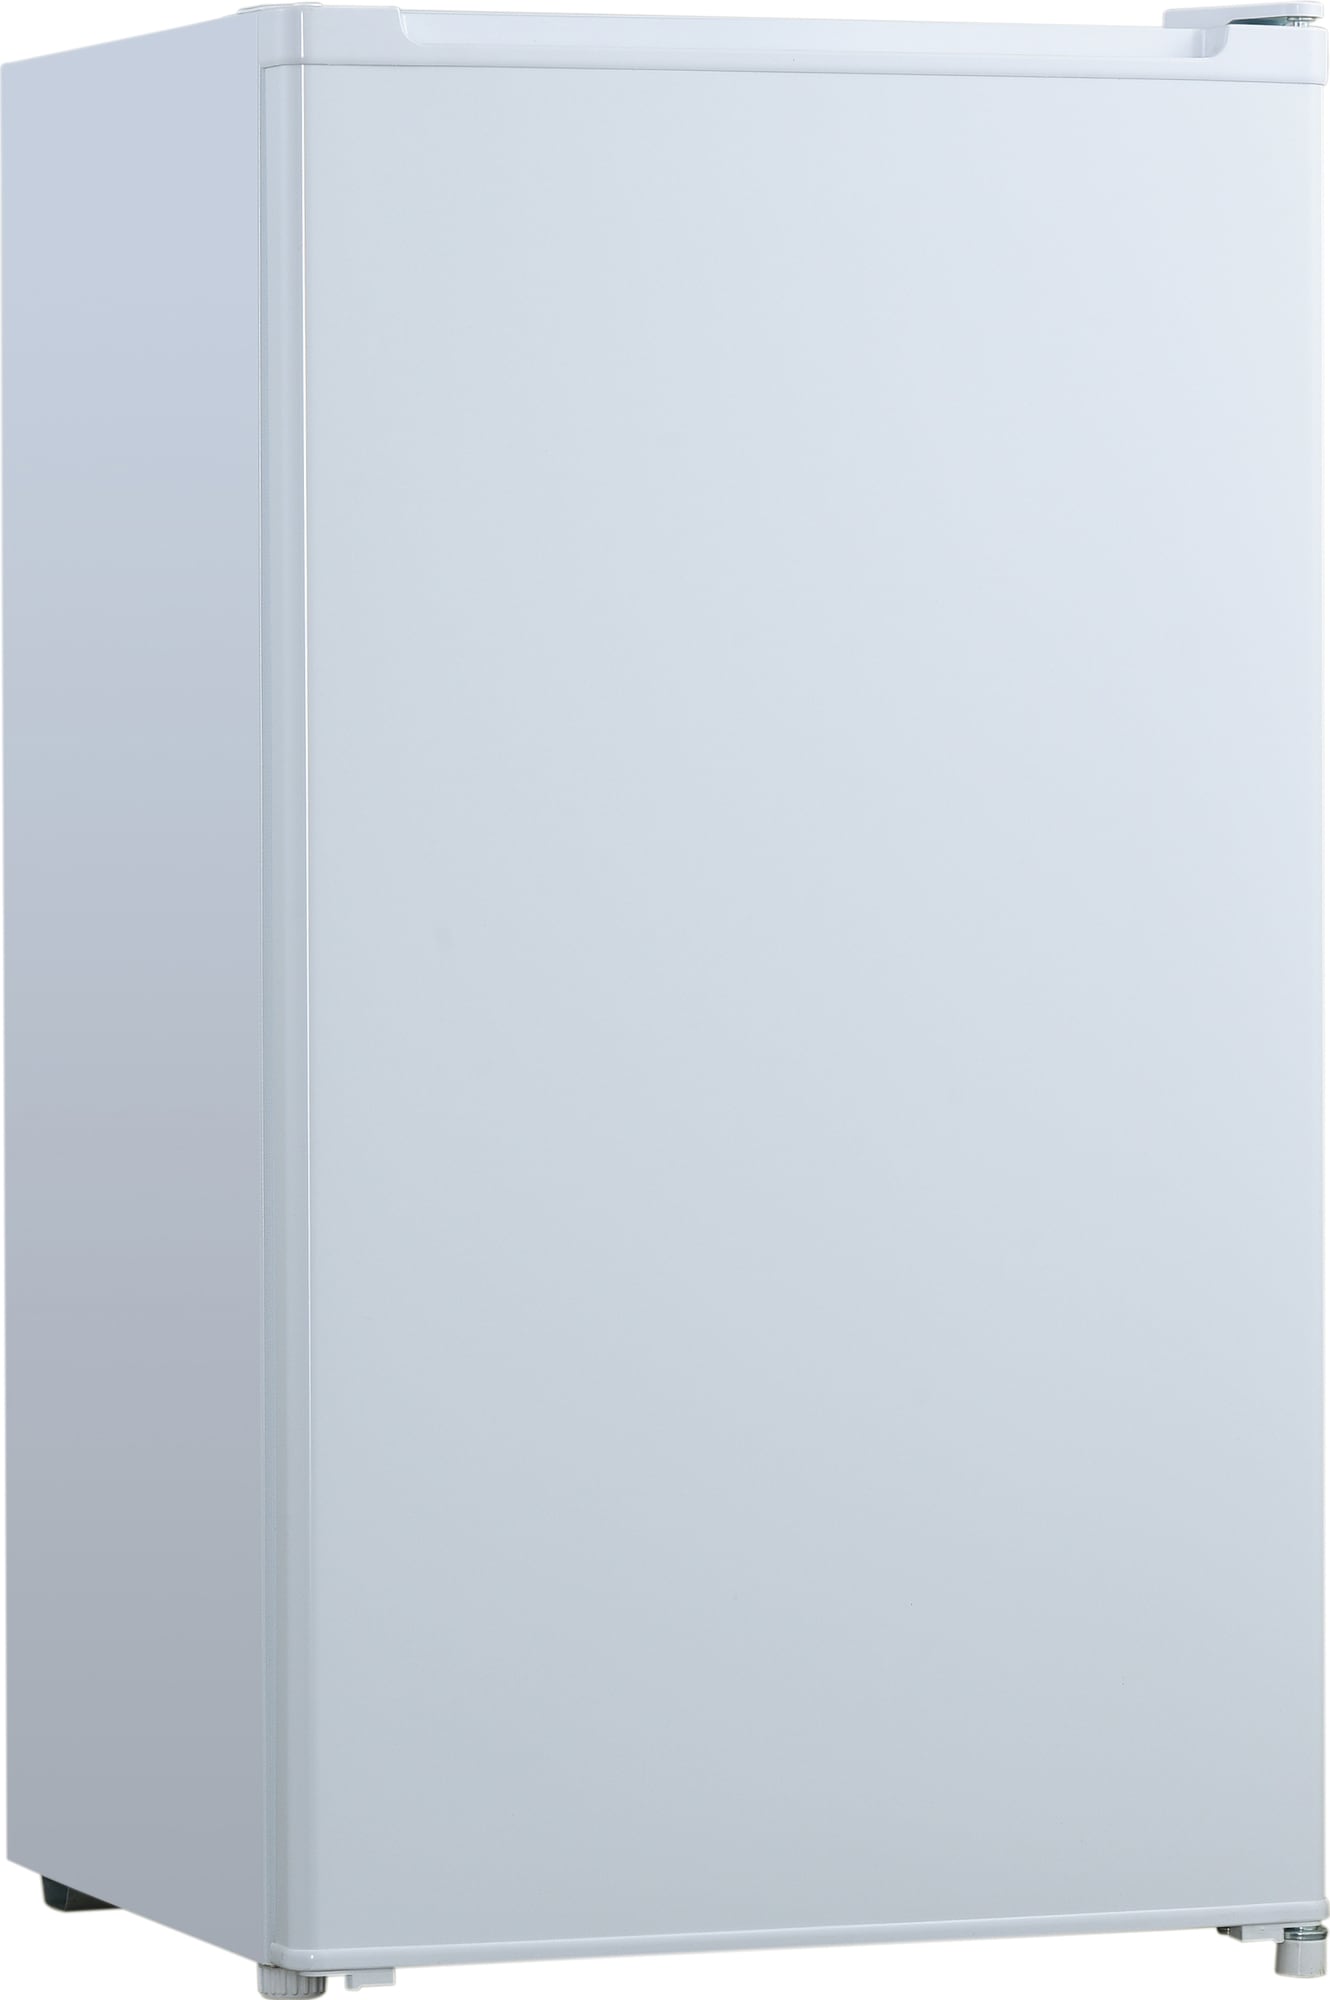 Logik køleskab LUL48W20E | Små køleskabe